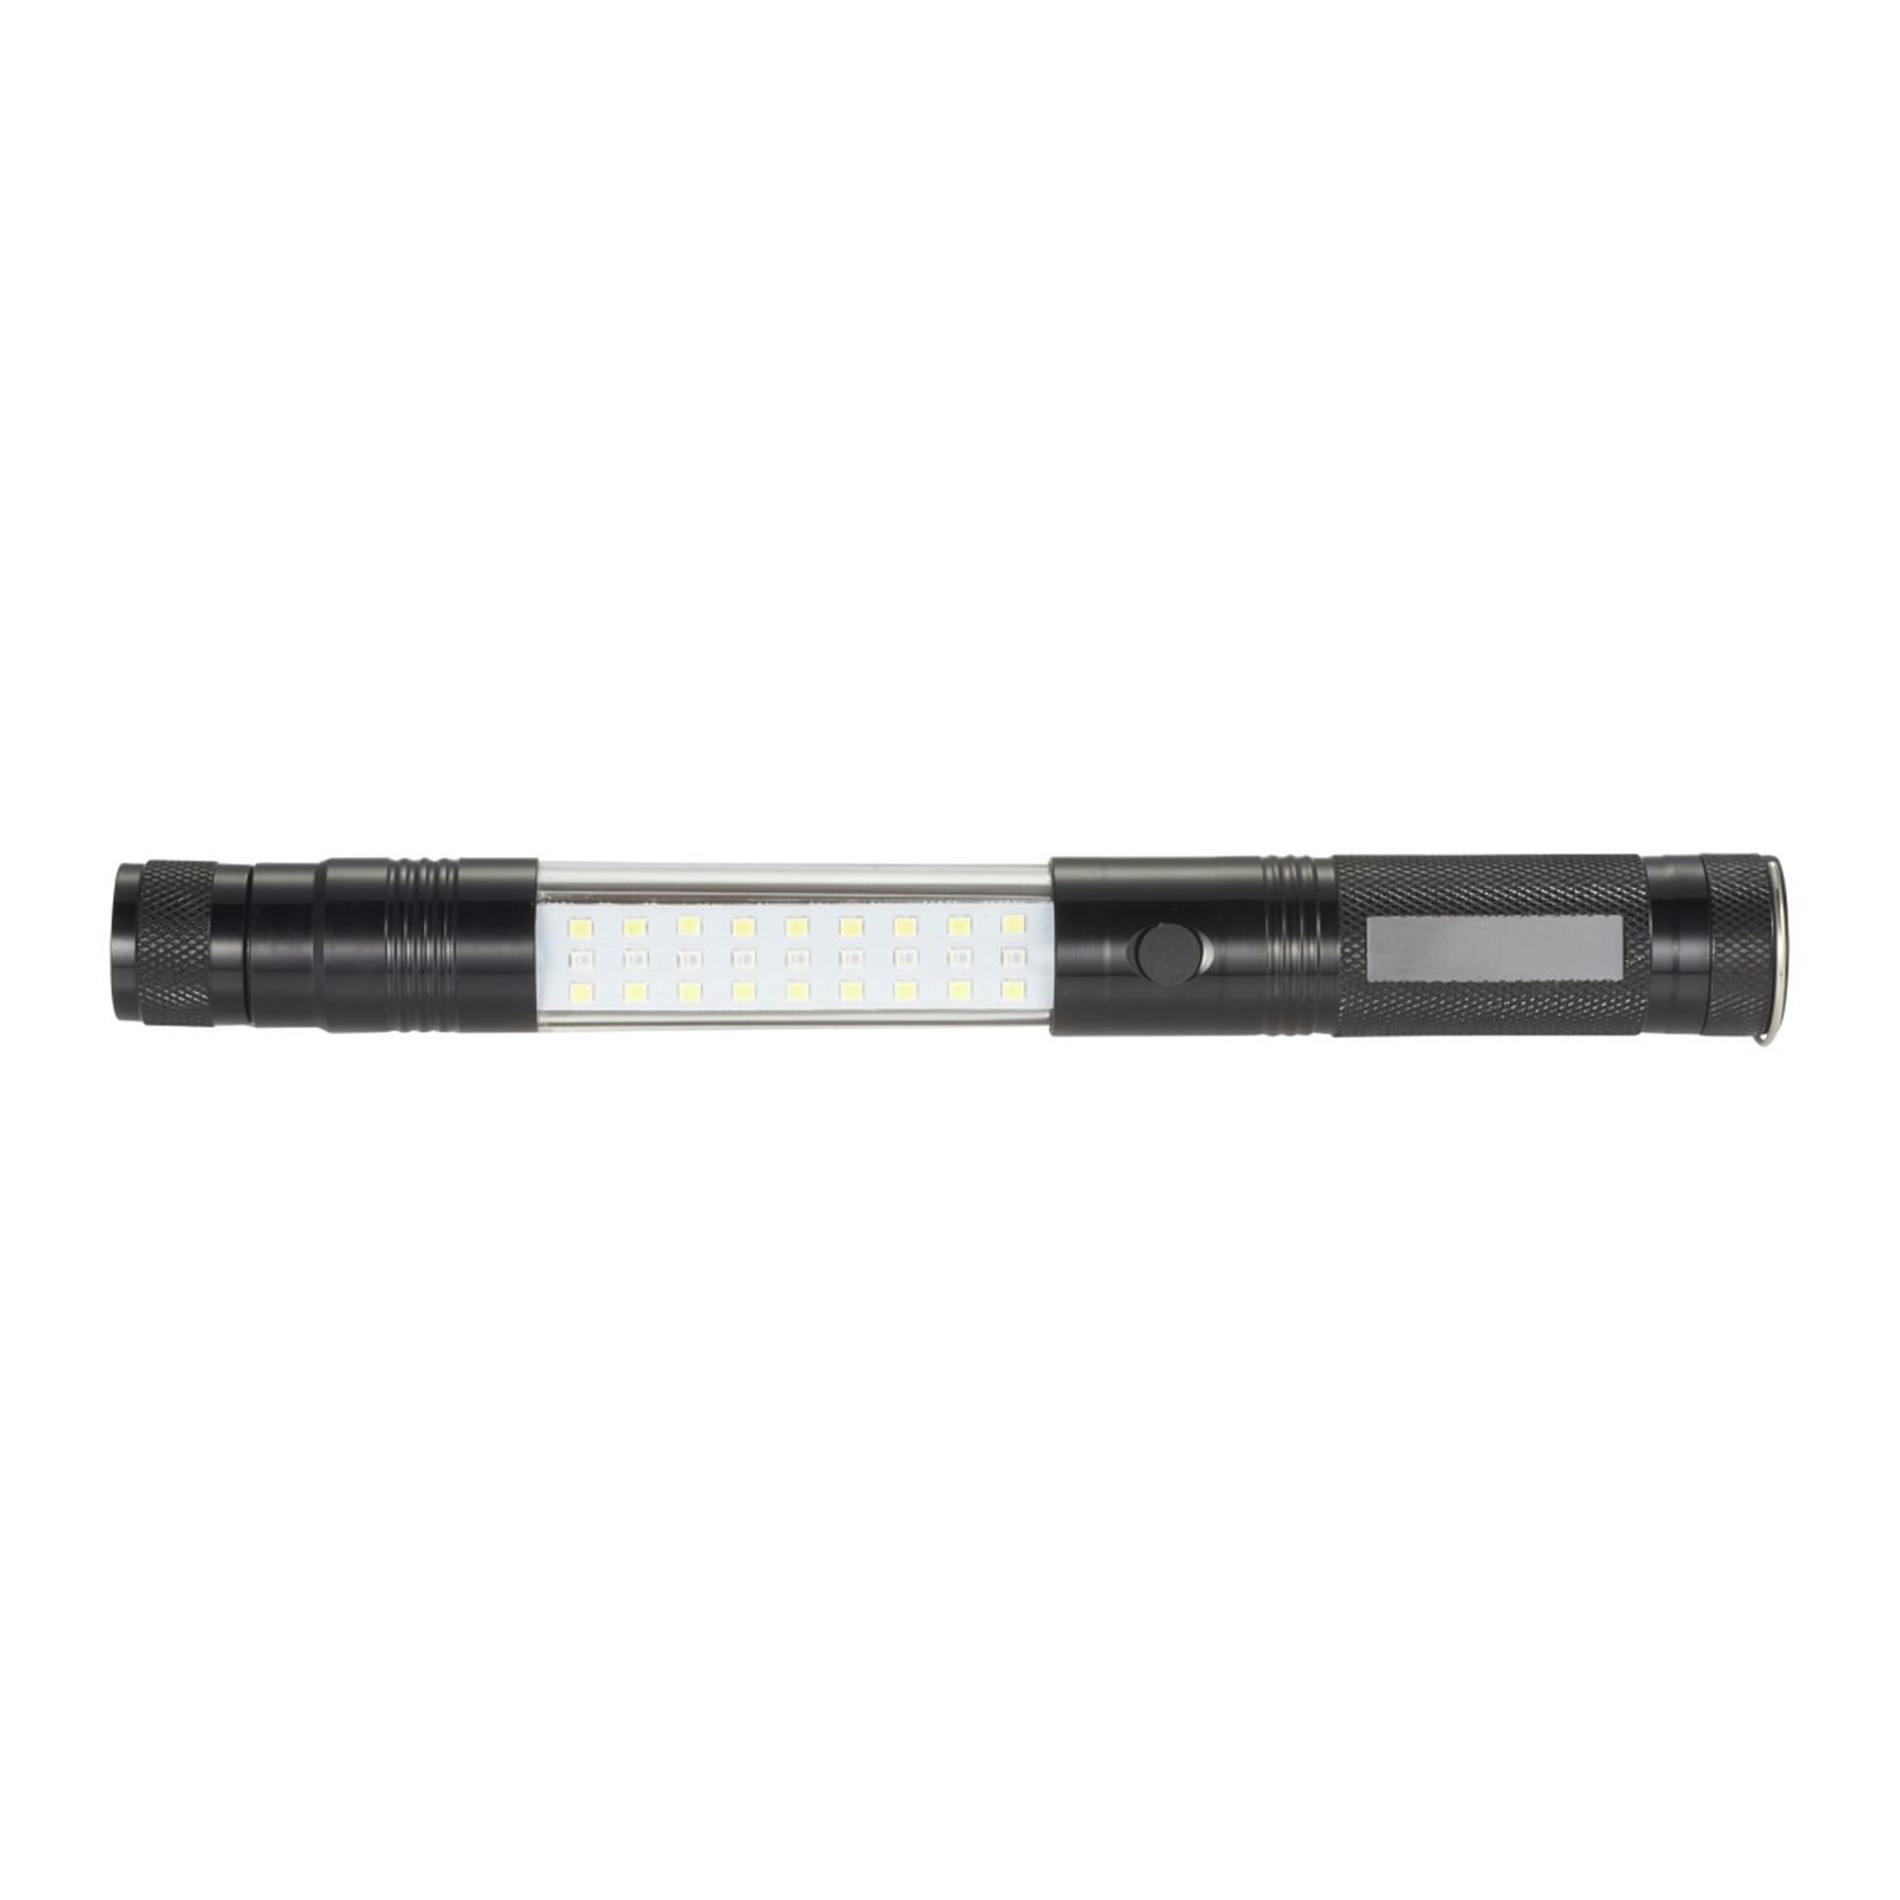 Telescopic Magnetic COB LED Flashlight w/Sidelight - additional Image 3